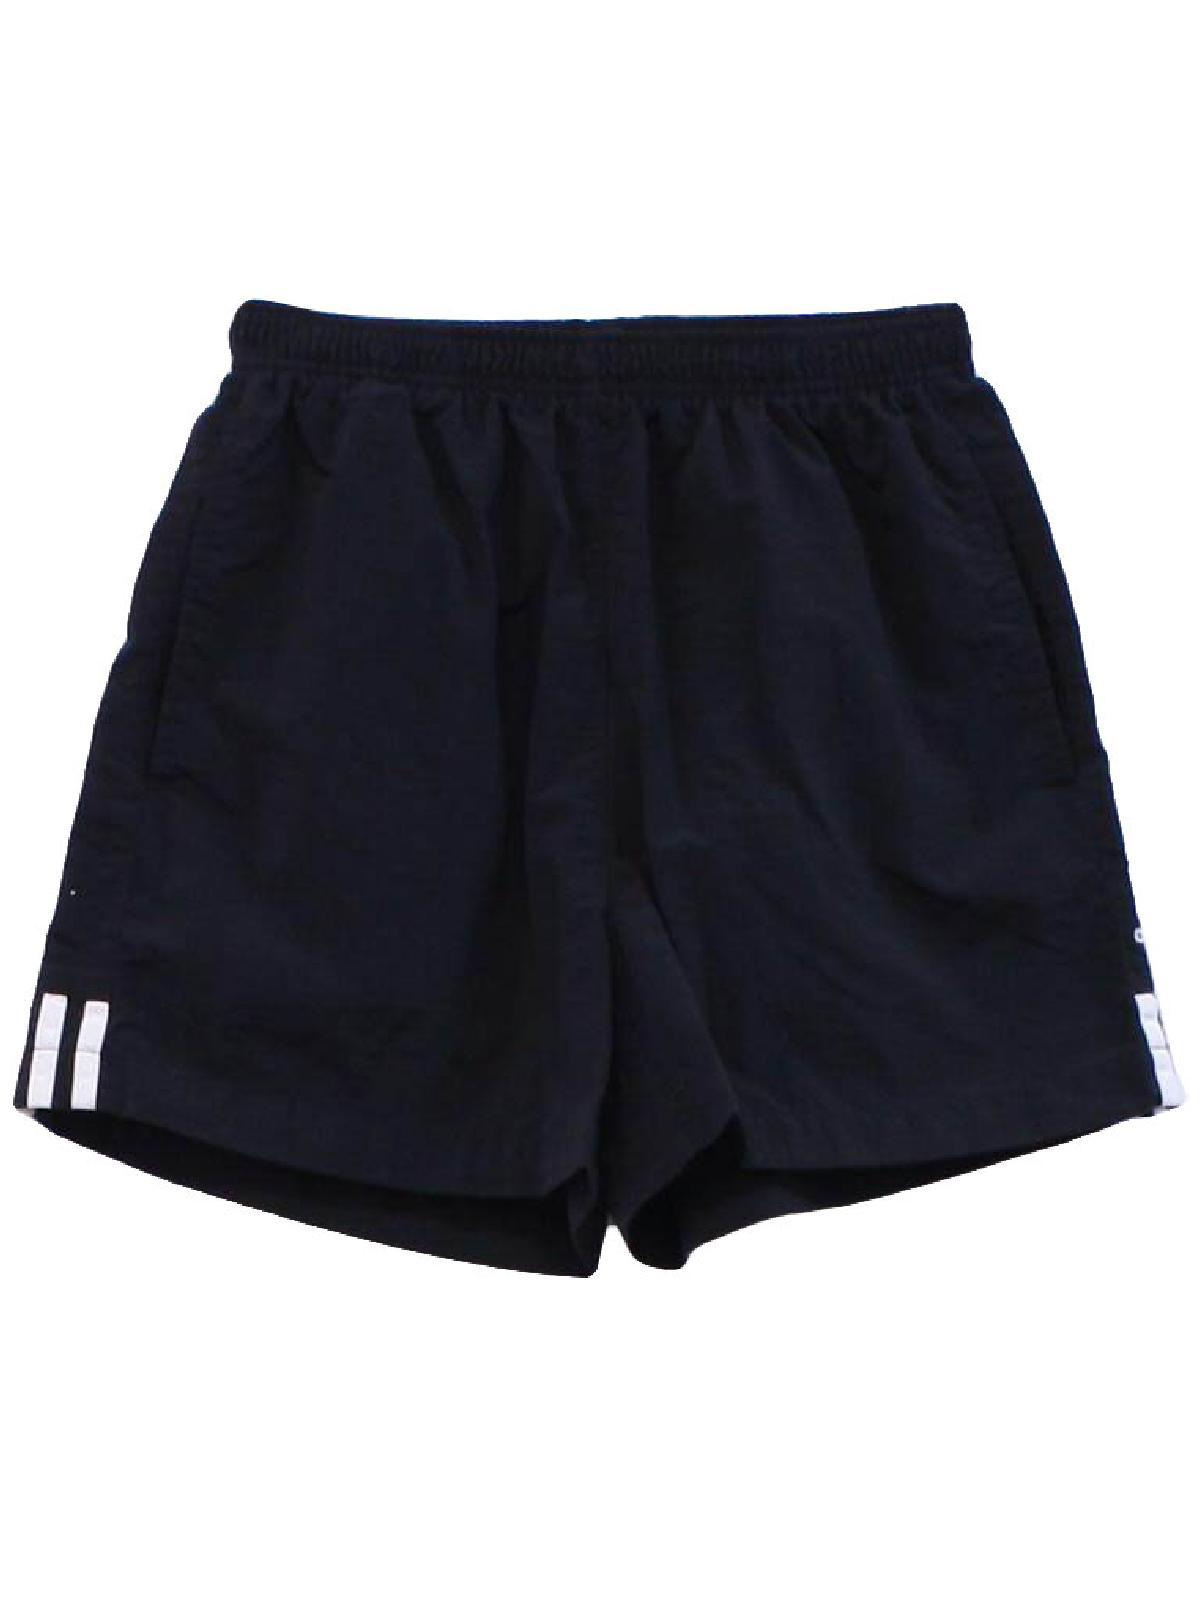 Vintage Adidas 90's Shorts: 90s -Adidas- Unisex black nylon crinkle ...